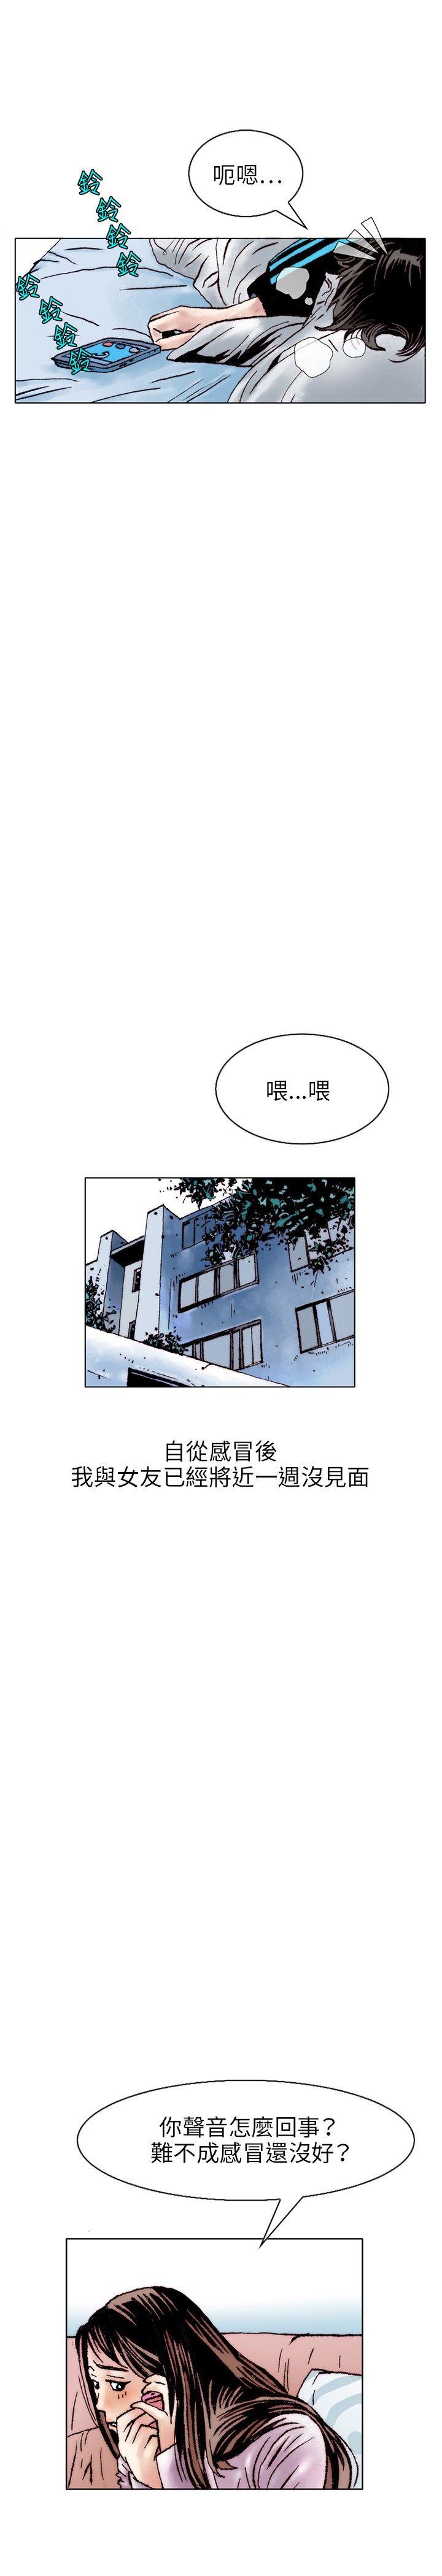 韩国污漫画 秘密Story 性爱奴隶(1) 10